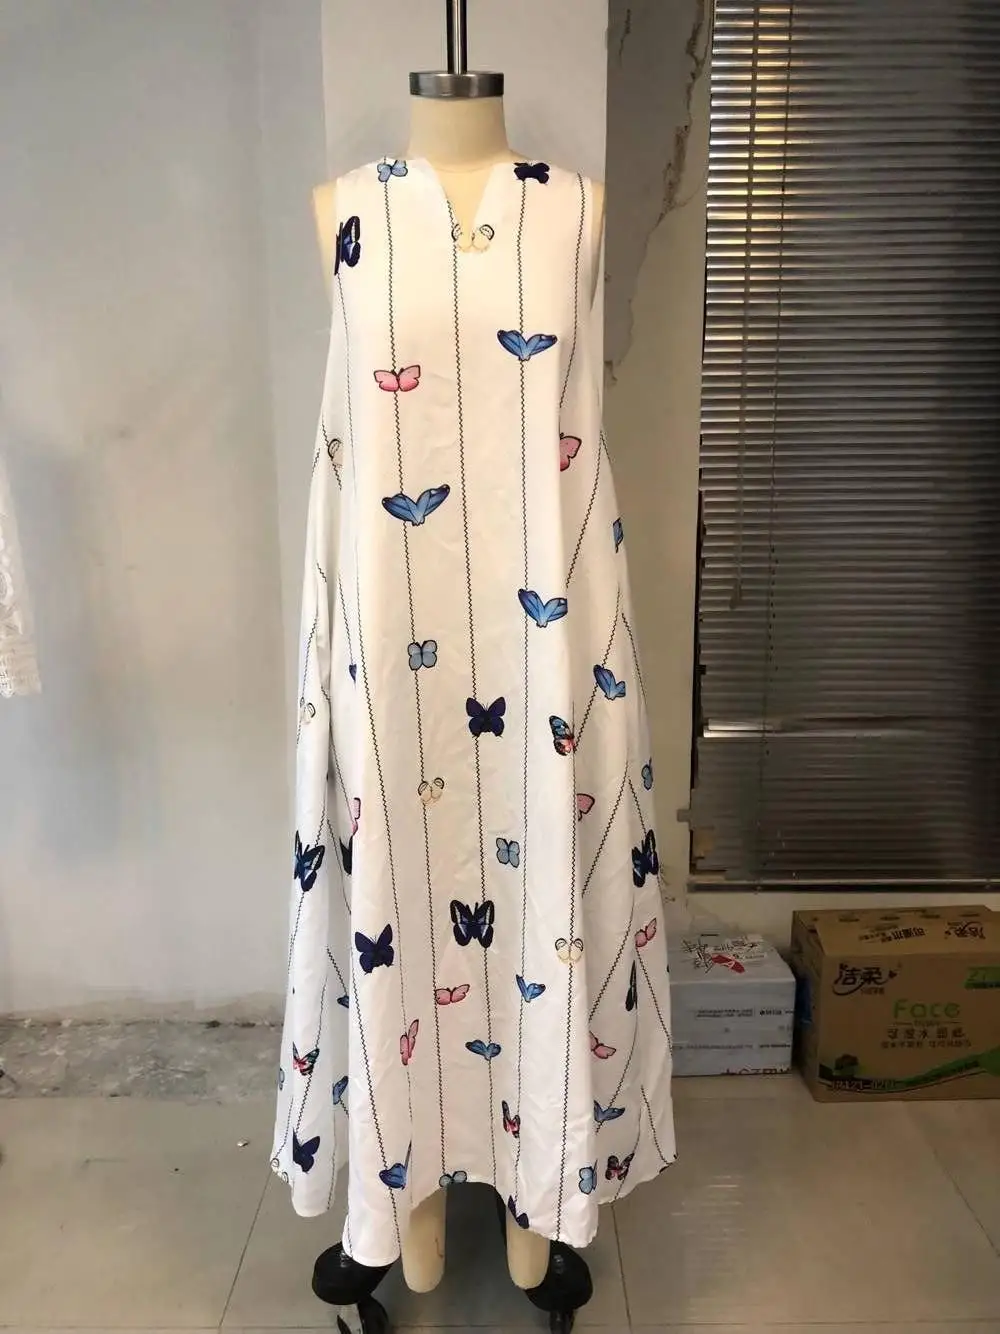 CALOFE Сексуальное Женское винтажное платье с v-образным вырезом и принтом бабочки летнее платье без рукавов с карманами повседневное Свободное длинное платье в стиле бохо